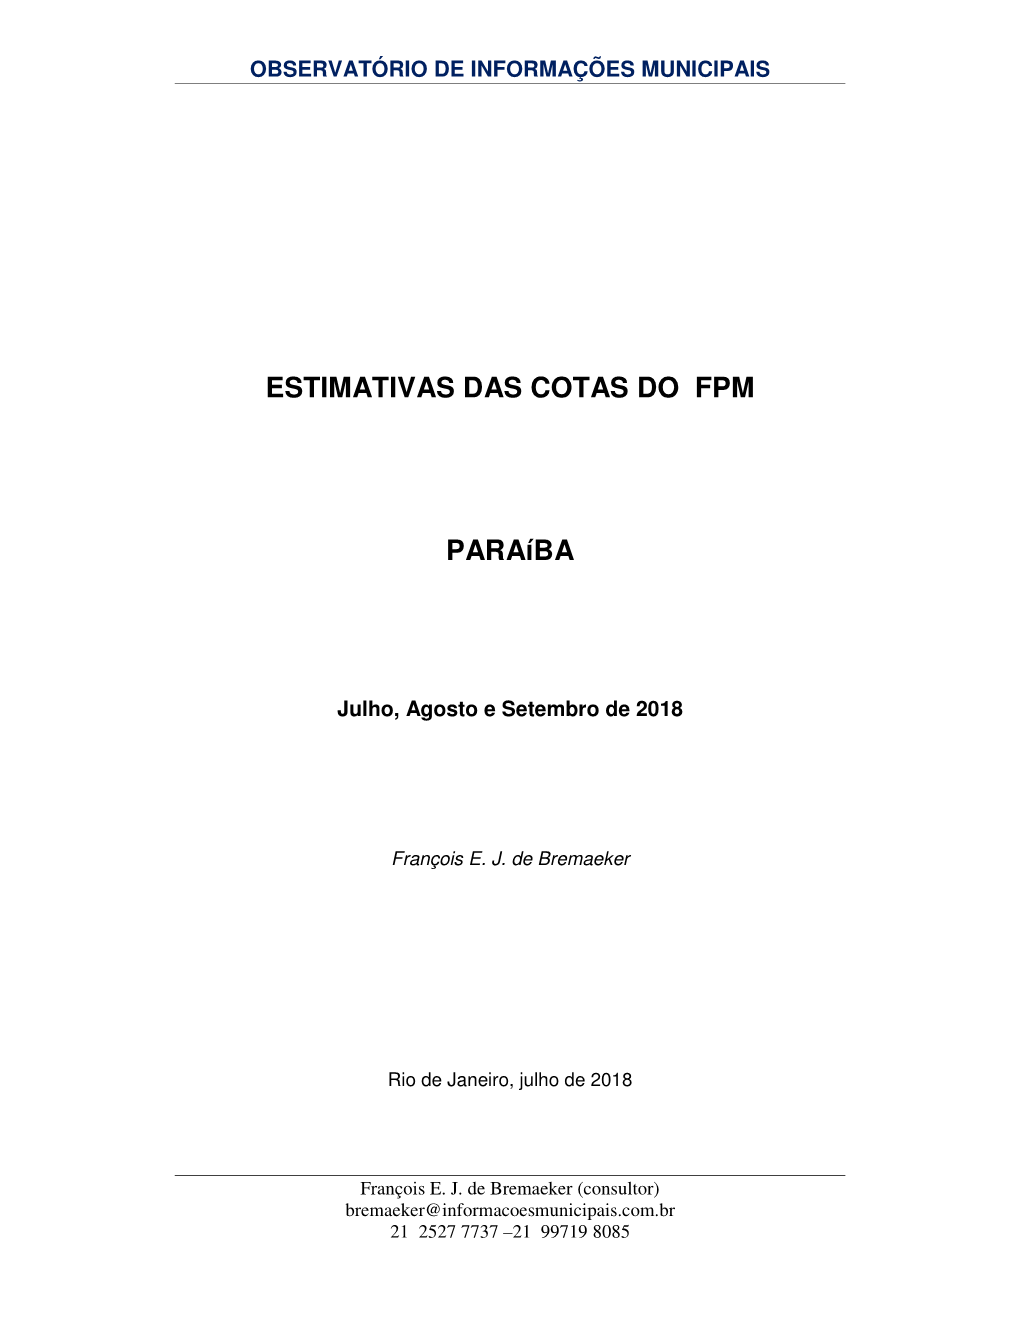 ESTIMATIVAS DAS COTAS DO FPM Paraíba -.. Observatório De Informações Municipais